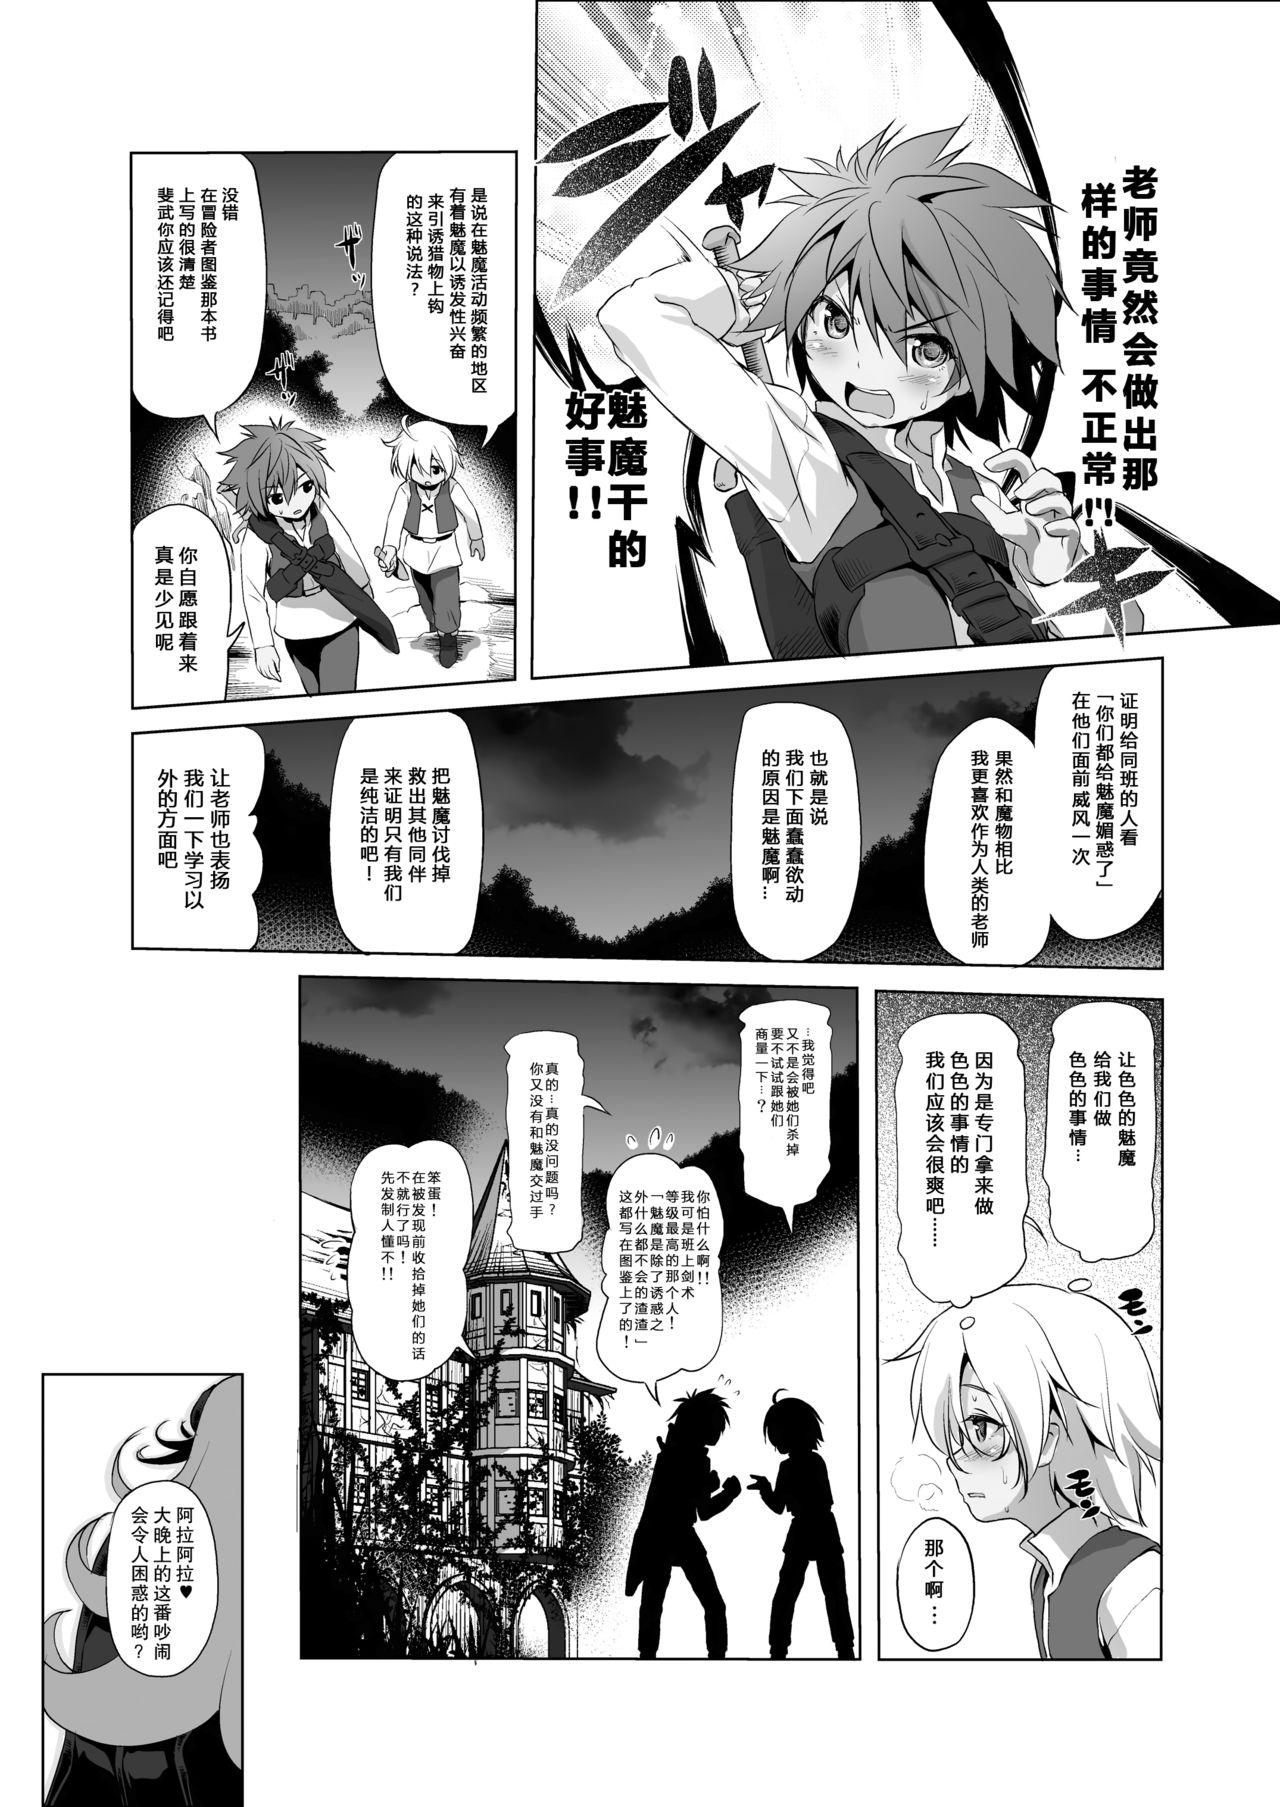 White Chick Makotoni Zannen desu ga Bouken no Sho 3 wa Kiete Shimaimashita. - Original  - Page 11